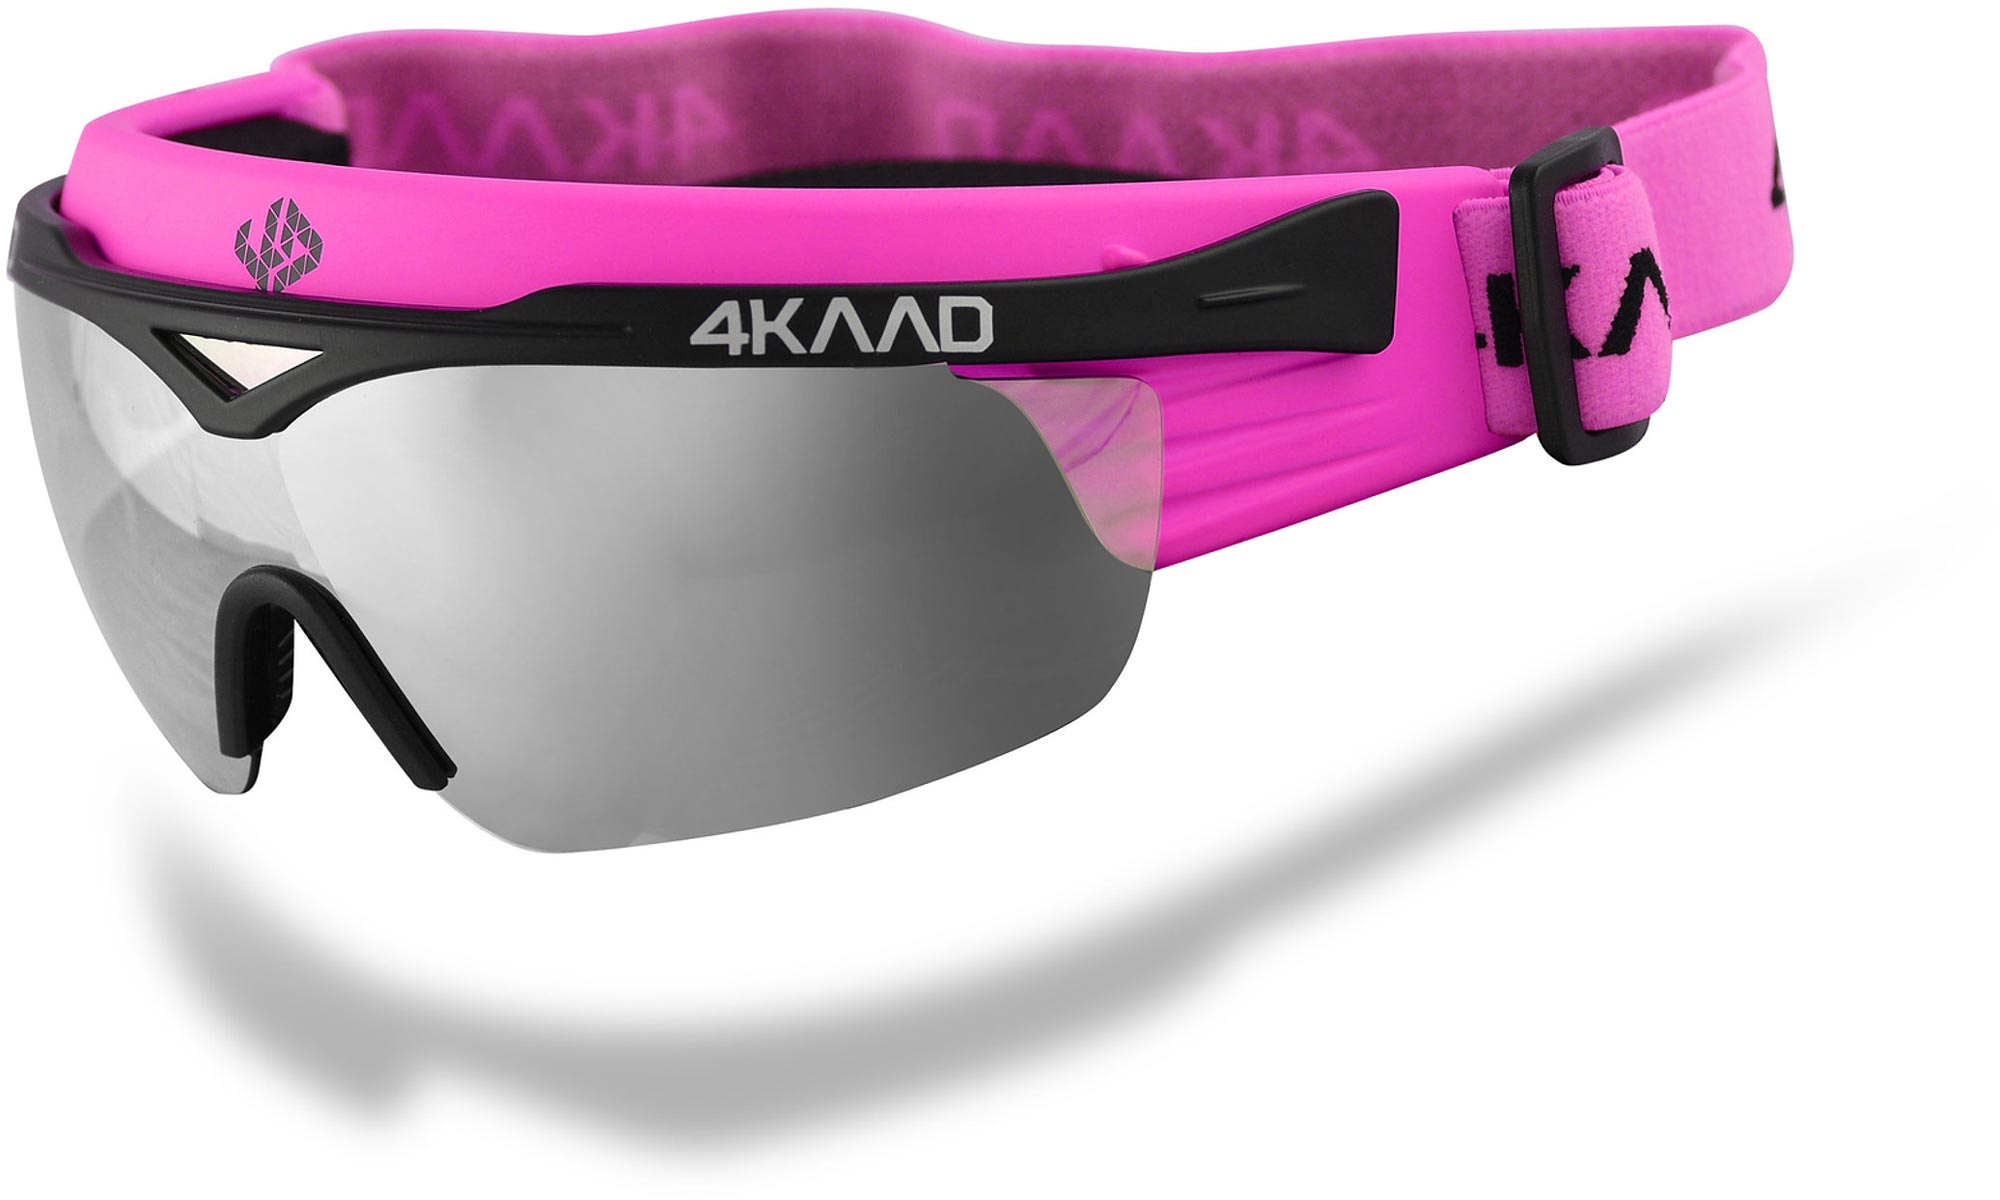 Слънчеви очила за безопасност при ски спусканията